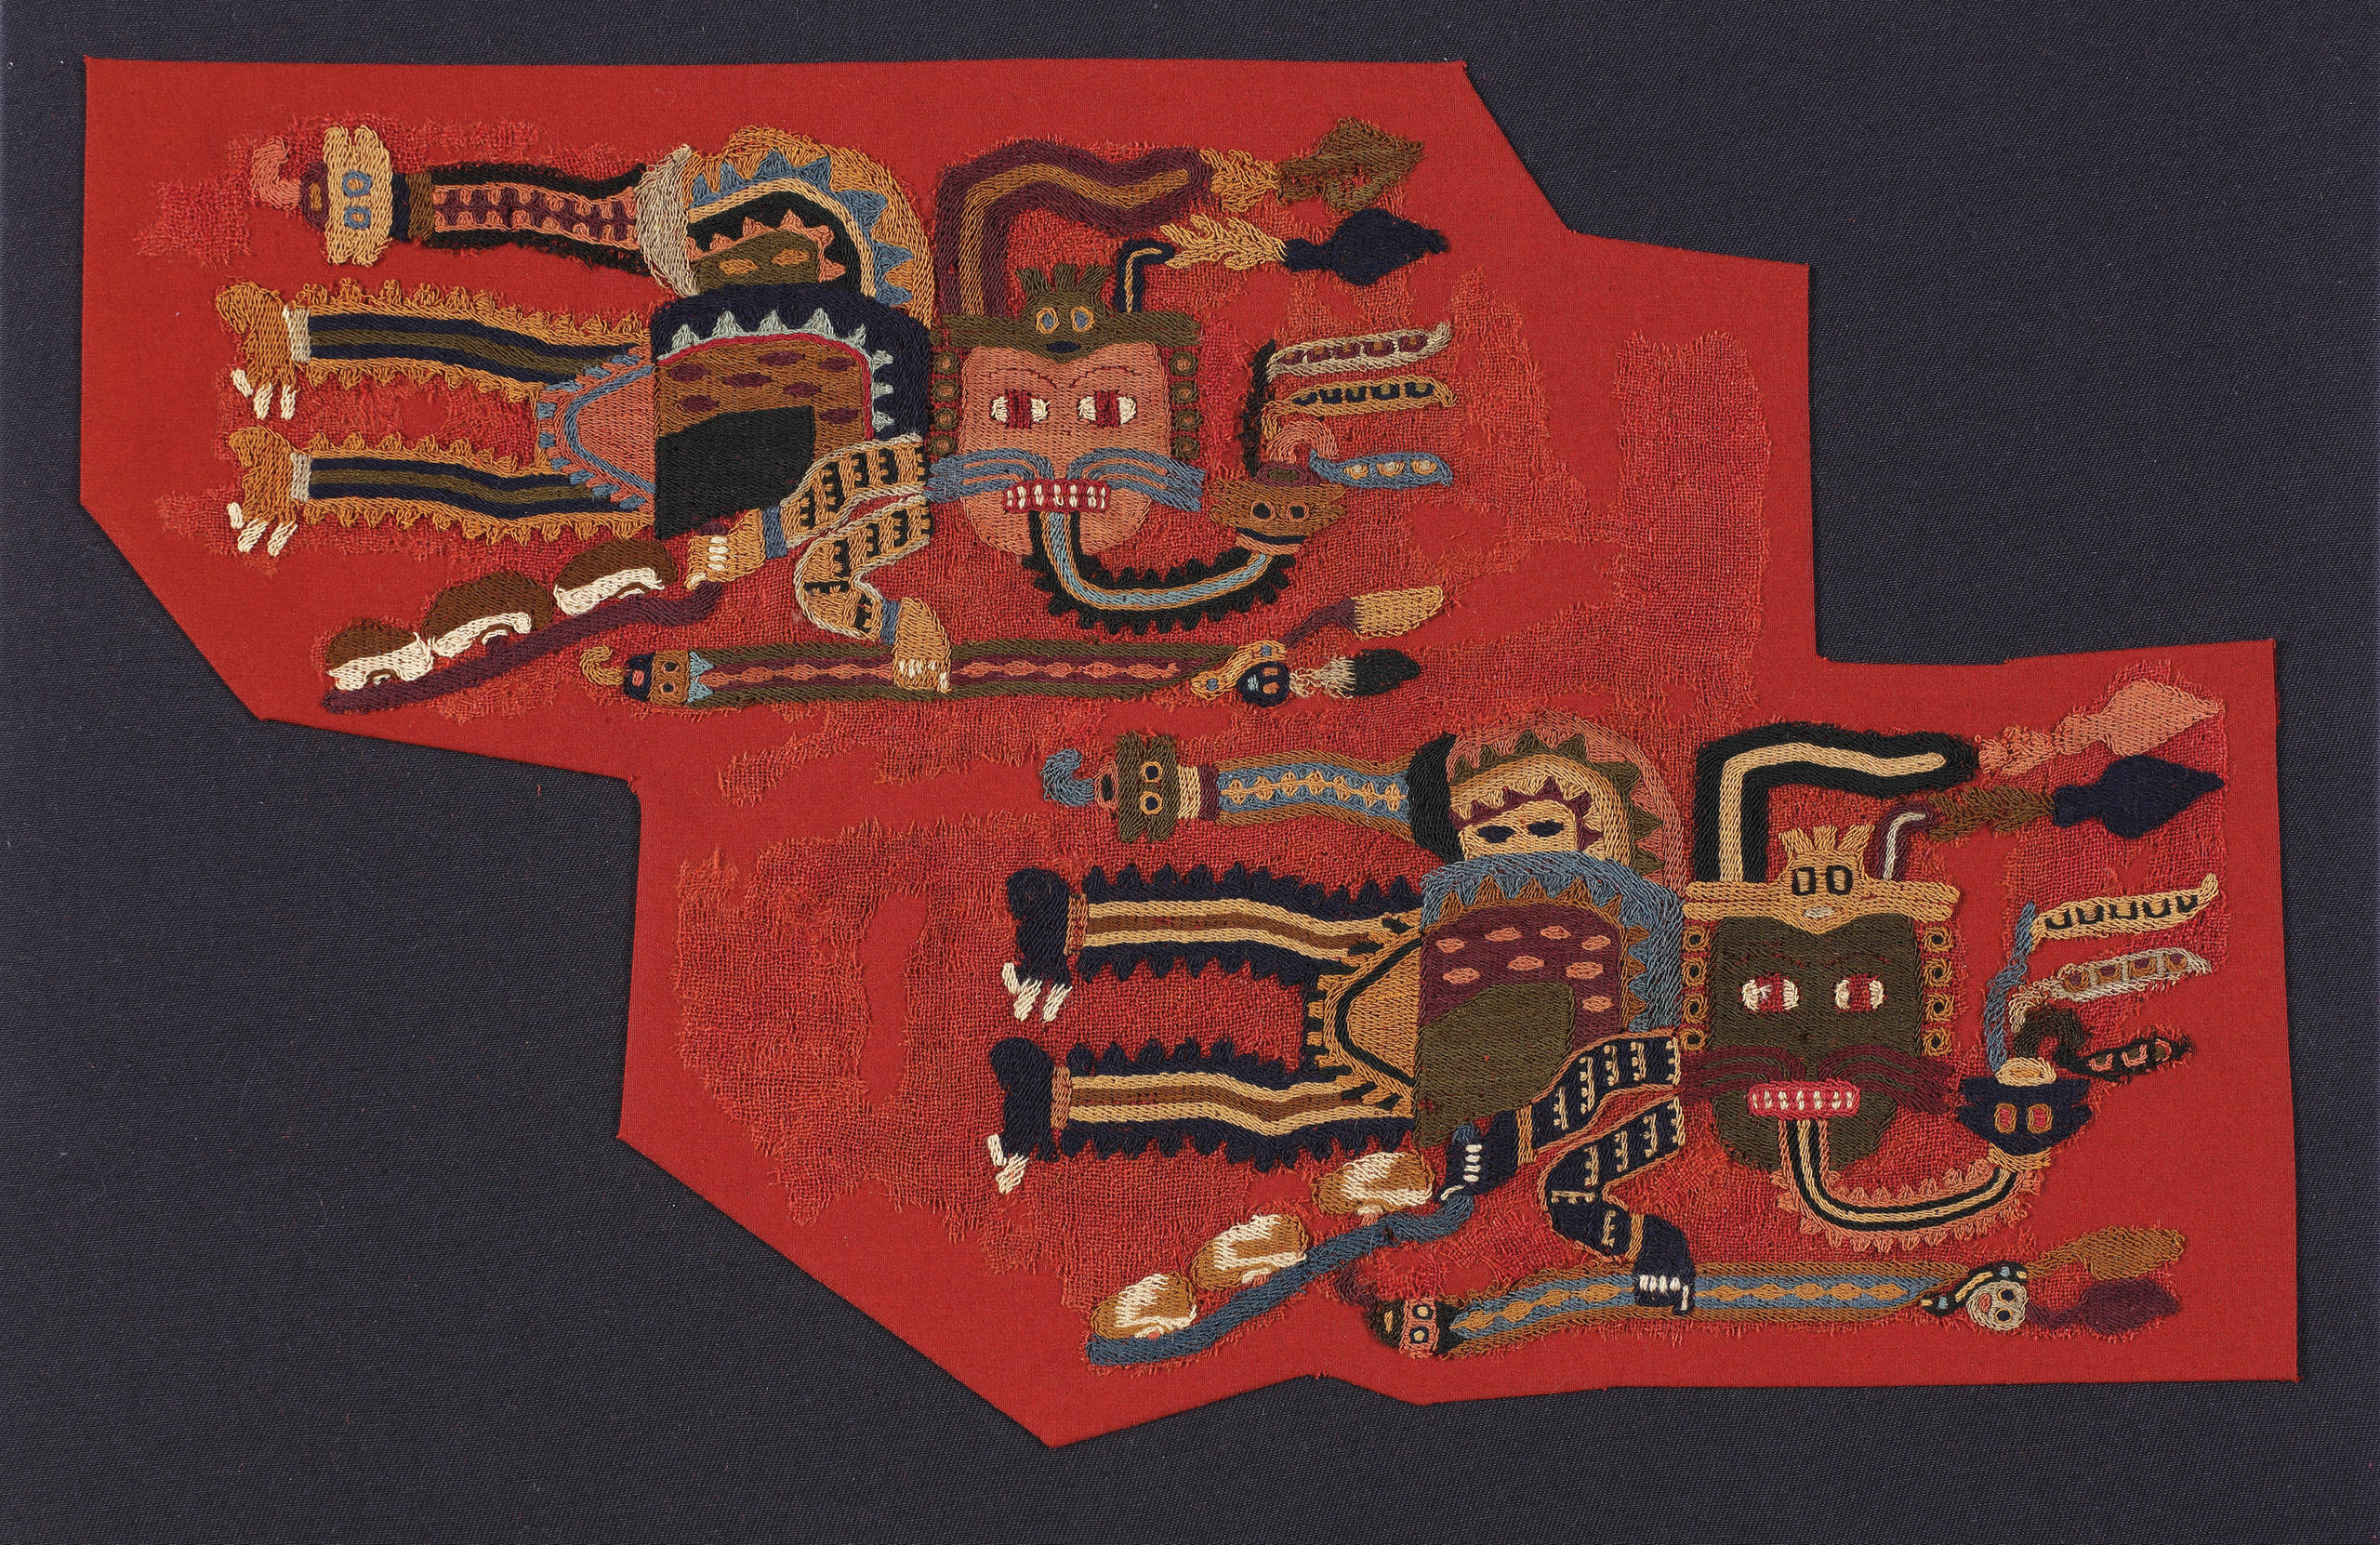 Fragmento têxtil com desenhos de sacerdotes voadores.